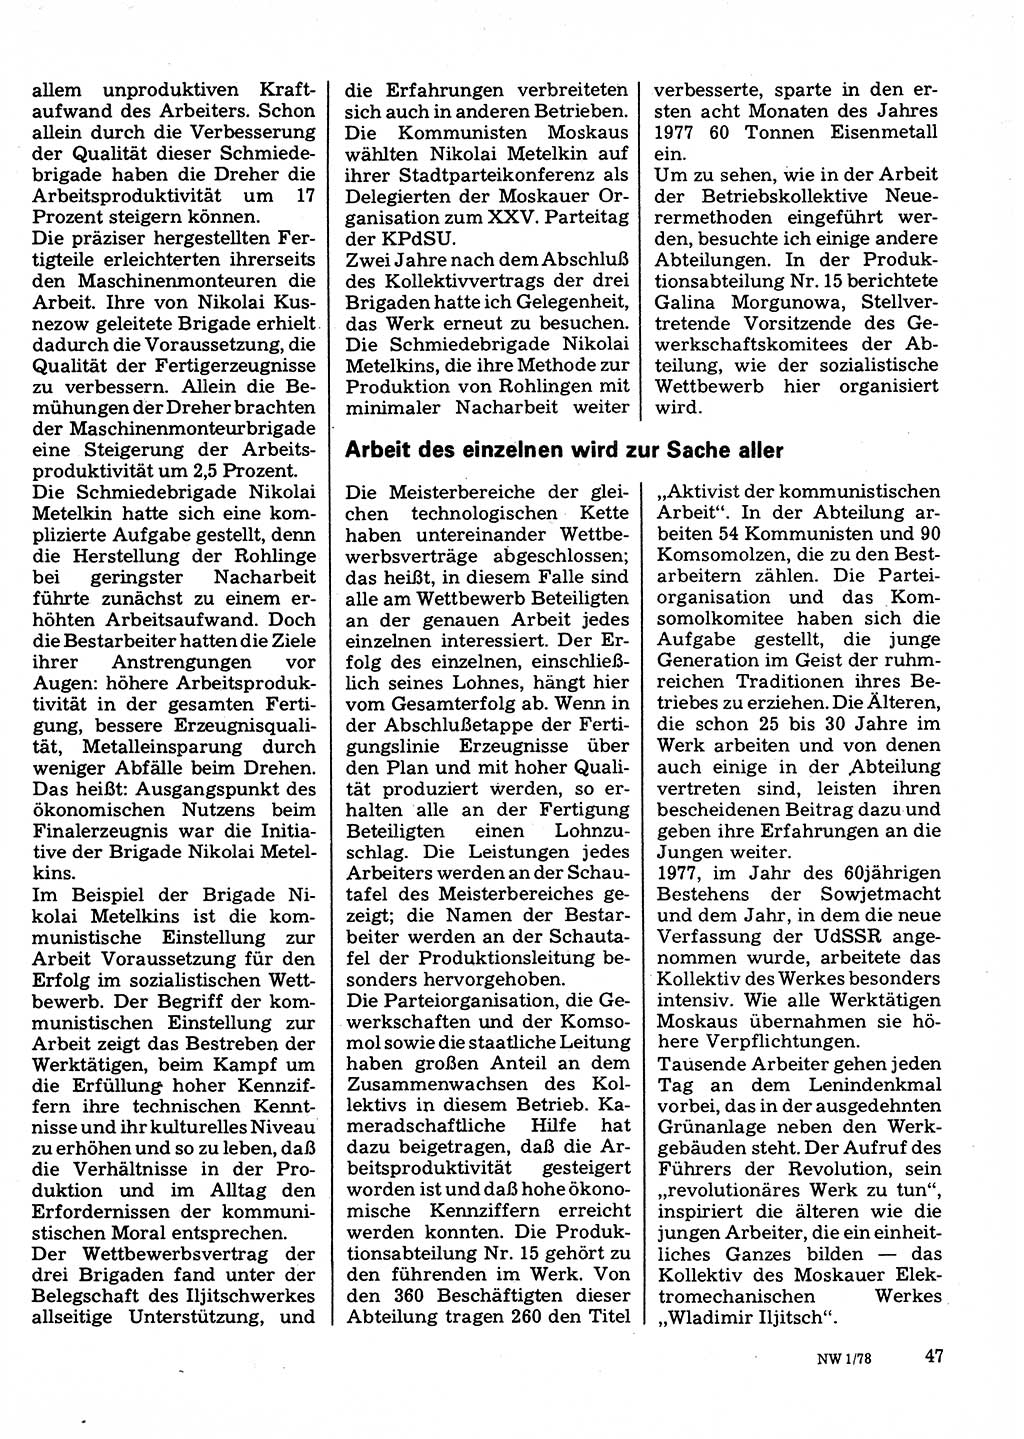 Neuer Weg (NW), Organ des Zentralkomitees (ZK) der SED (Sozialistische Einheitspartei Deutschlands) für Fragen des Parteilebens, 33. Jahrgang [Deutsche Demokratische Republik (DDR)] 1978, Seite 47 (NW ZK SED DDR 1978, S. 47)